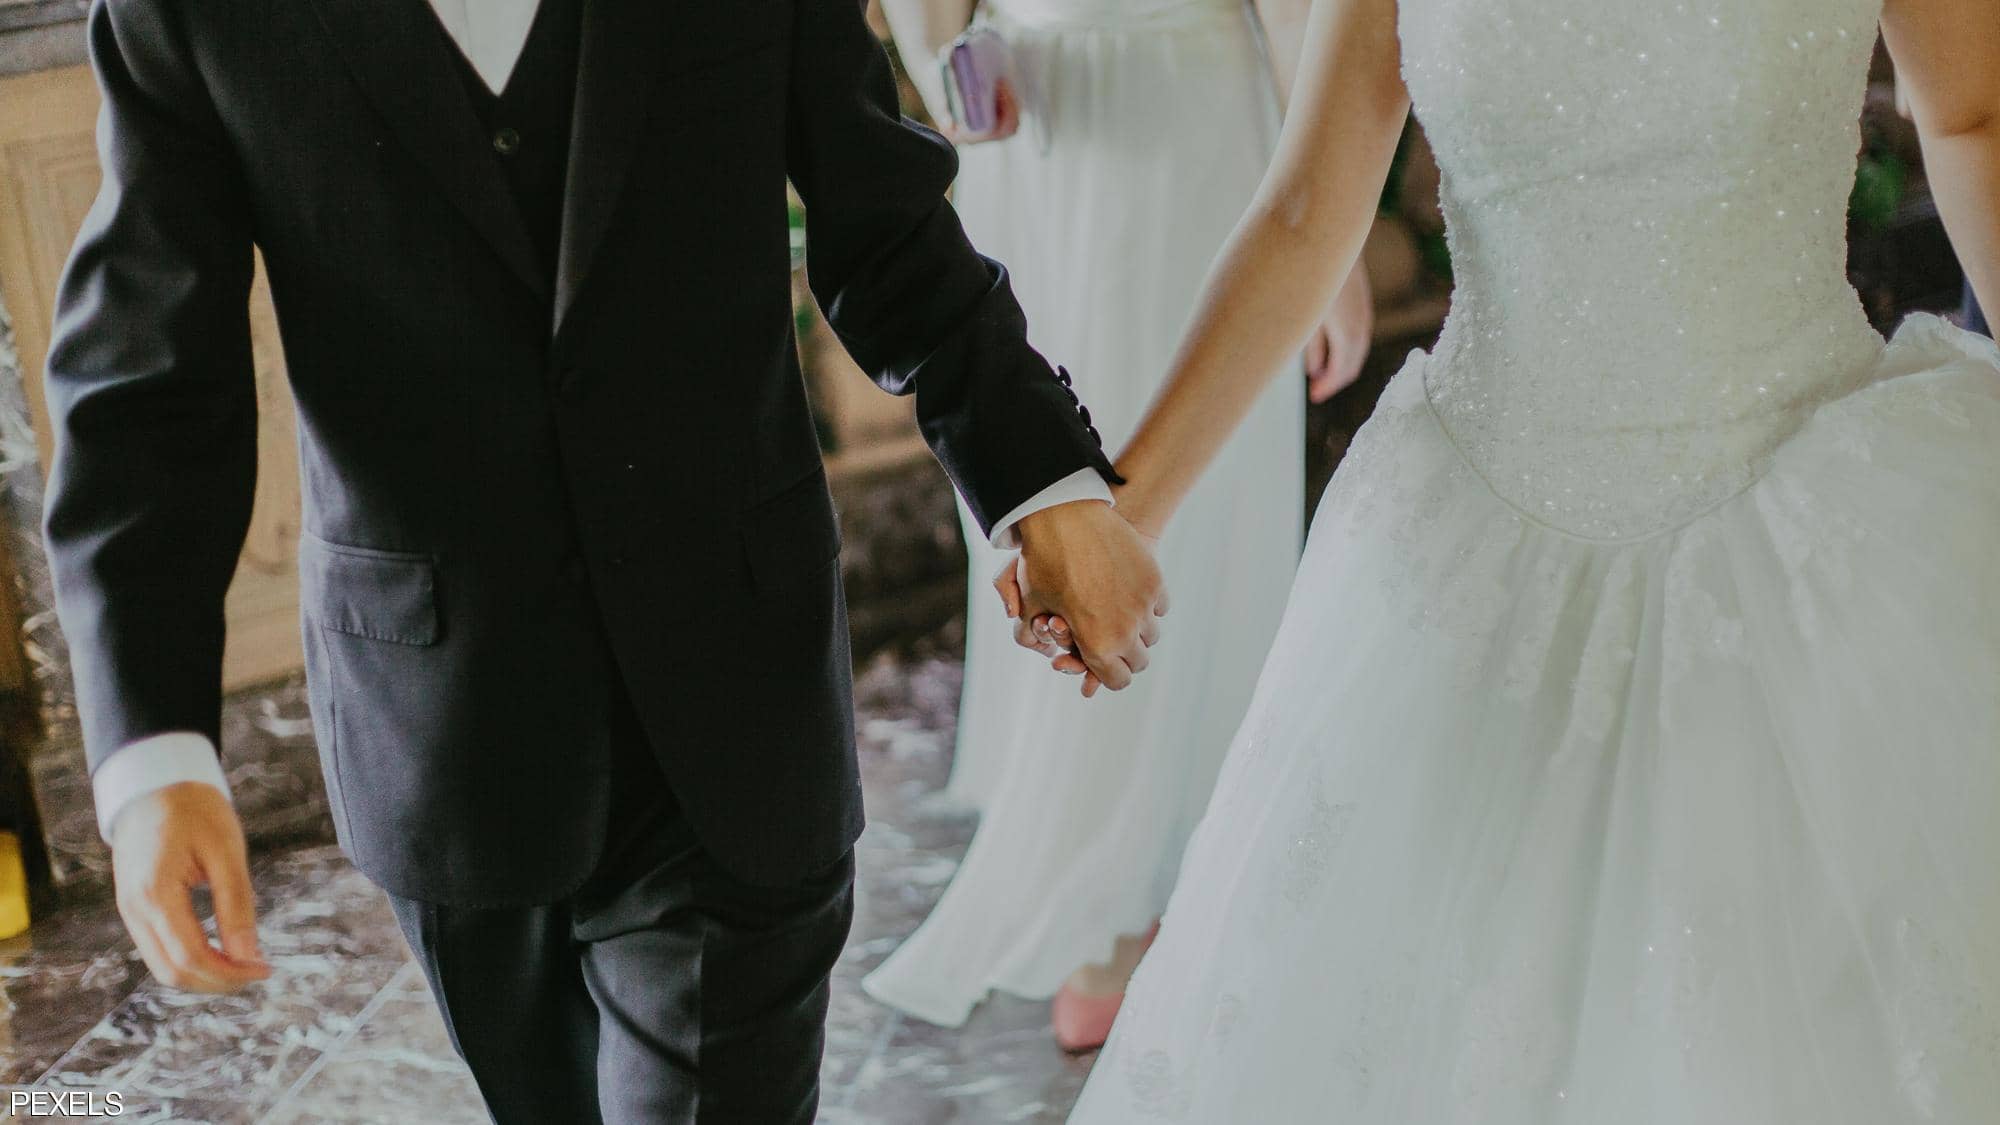 "أزمة مباغتة" تلغي حفلات زفاف 7 آلاف عريس وعروسة